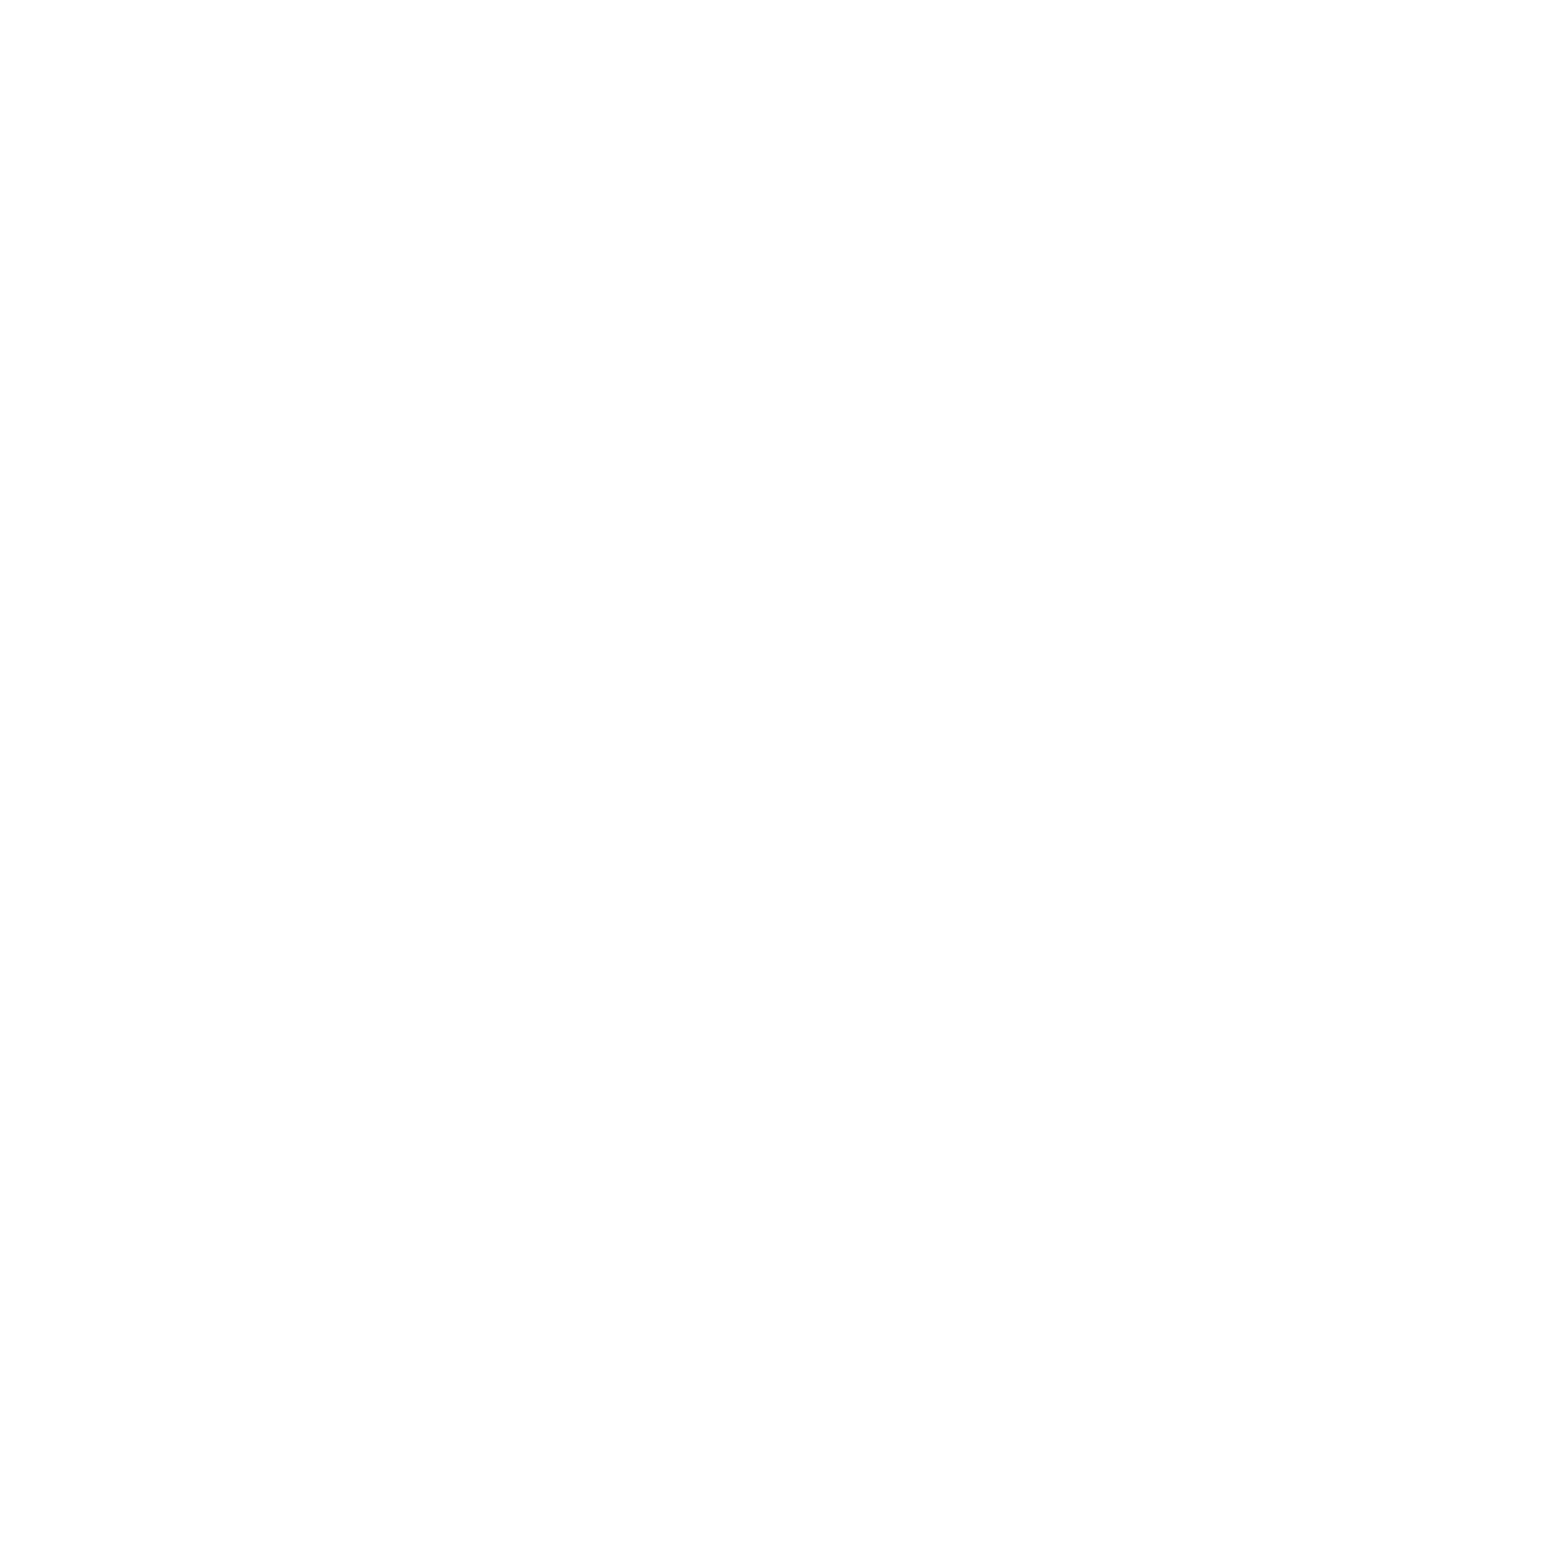 Pfizer logo for dark backgrounds (transparent PNG)